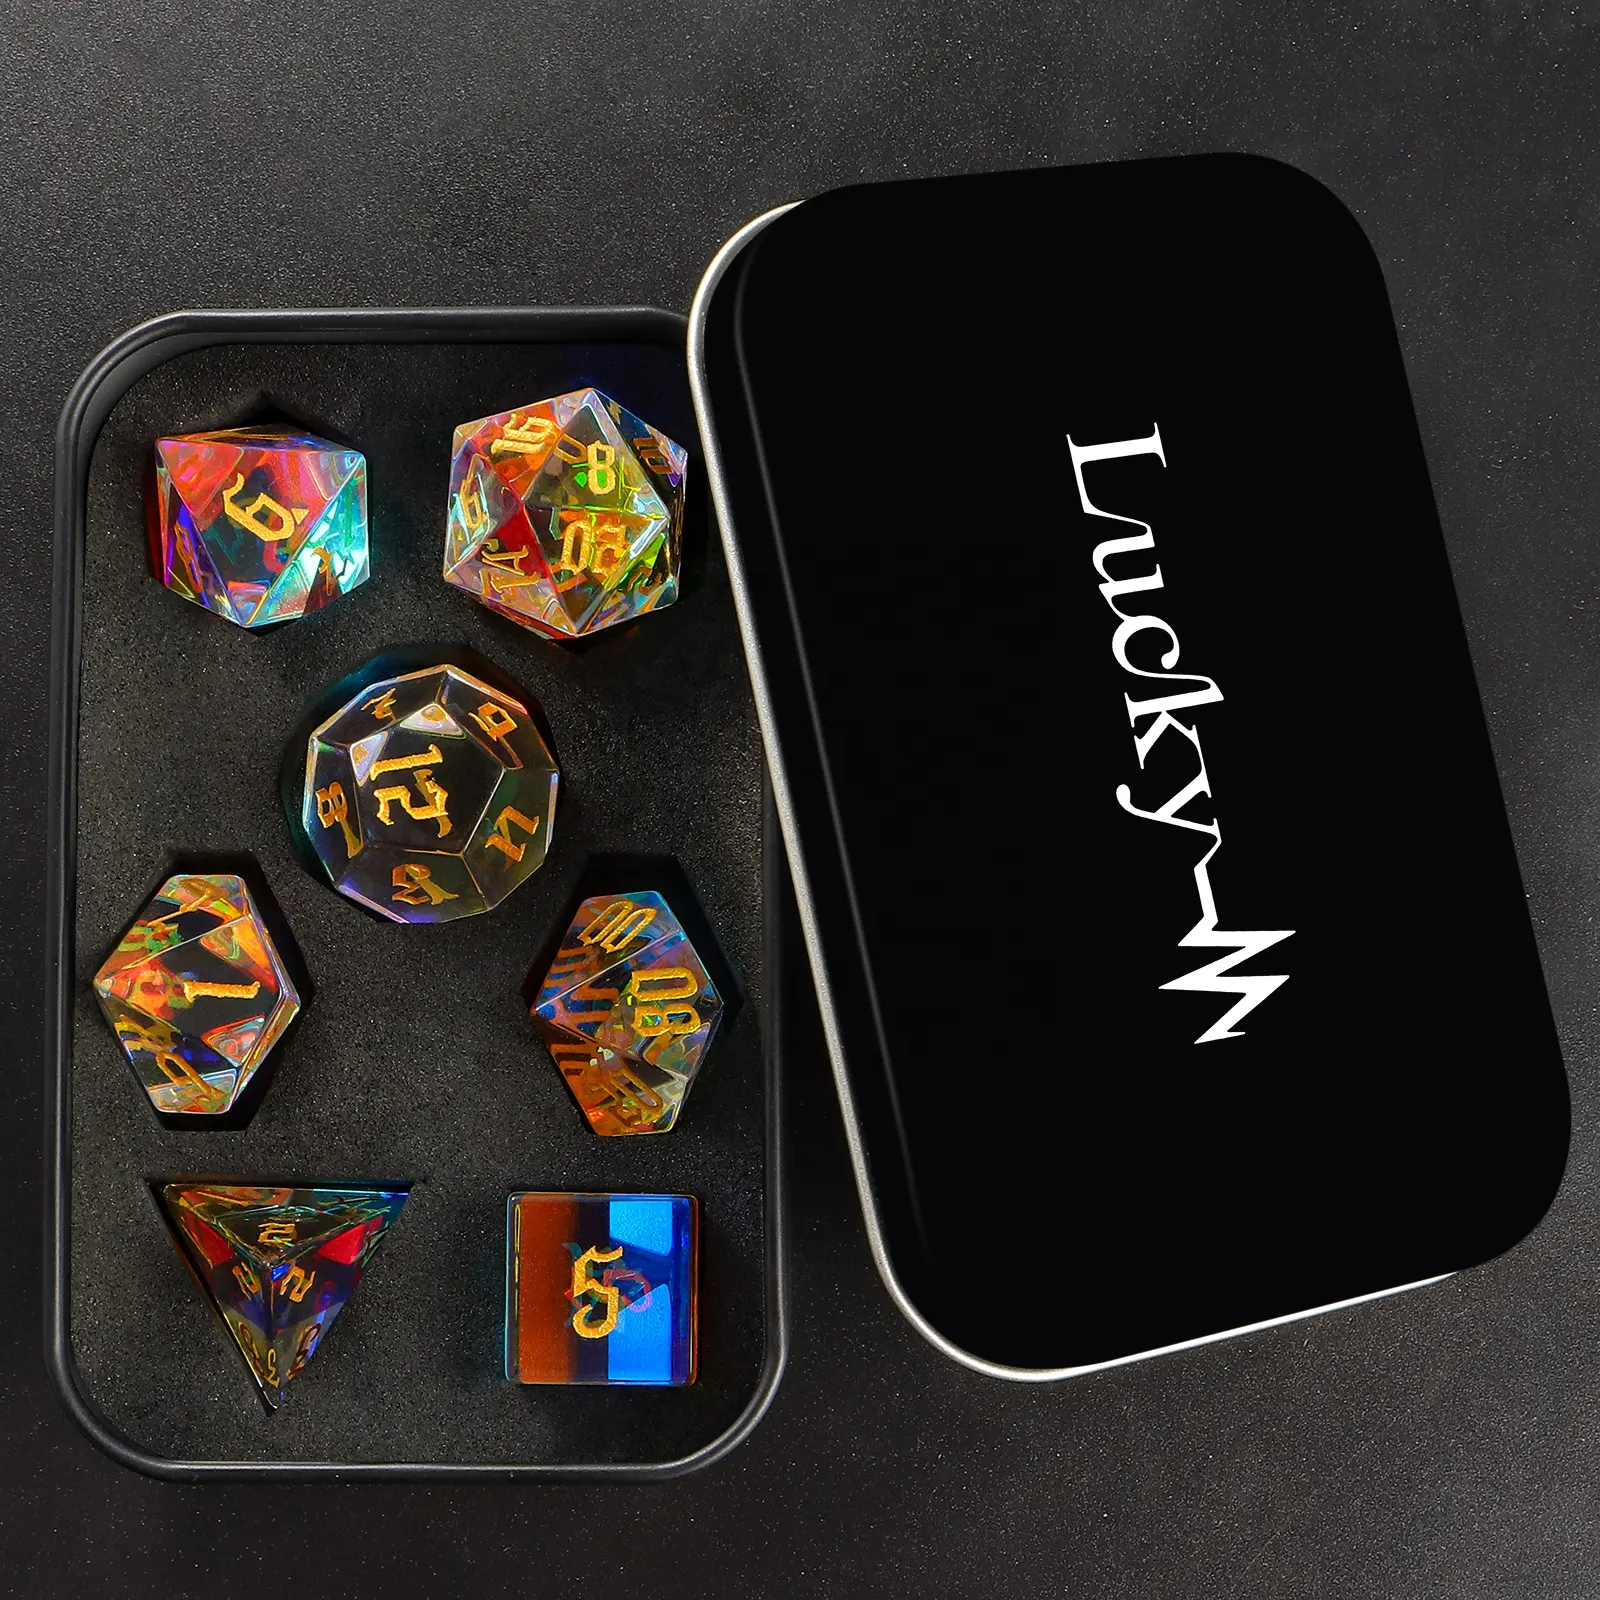 Juego de dados de piedras preciosas poliédricas naturales RPG con logotipo personalizado, juego de dados de gemas DND de cristal con prisma arcoíris para juegos de mesa